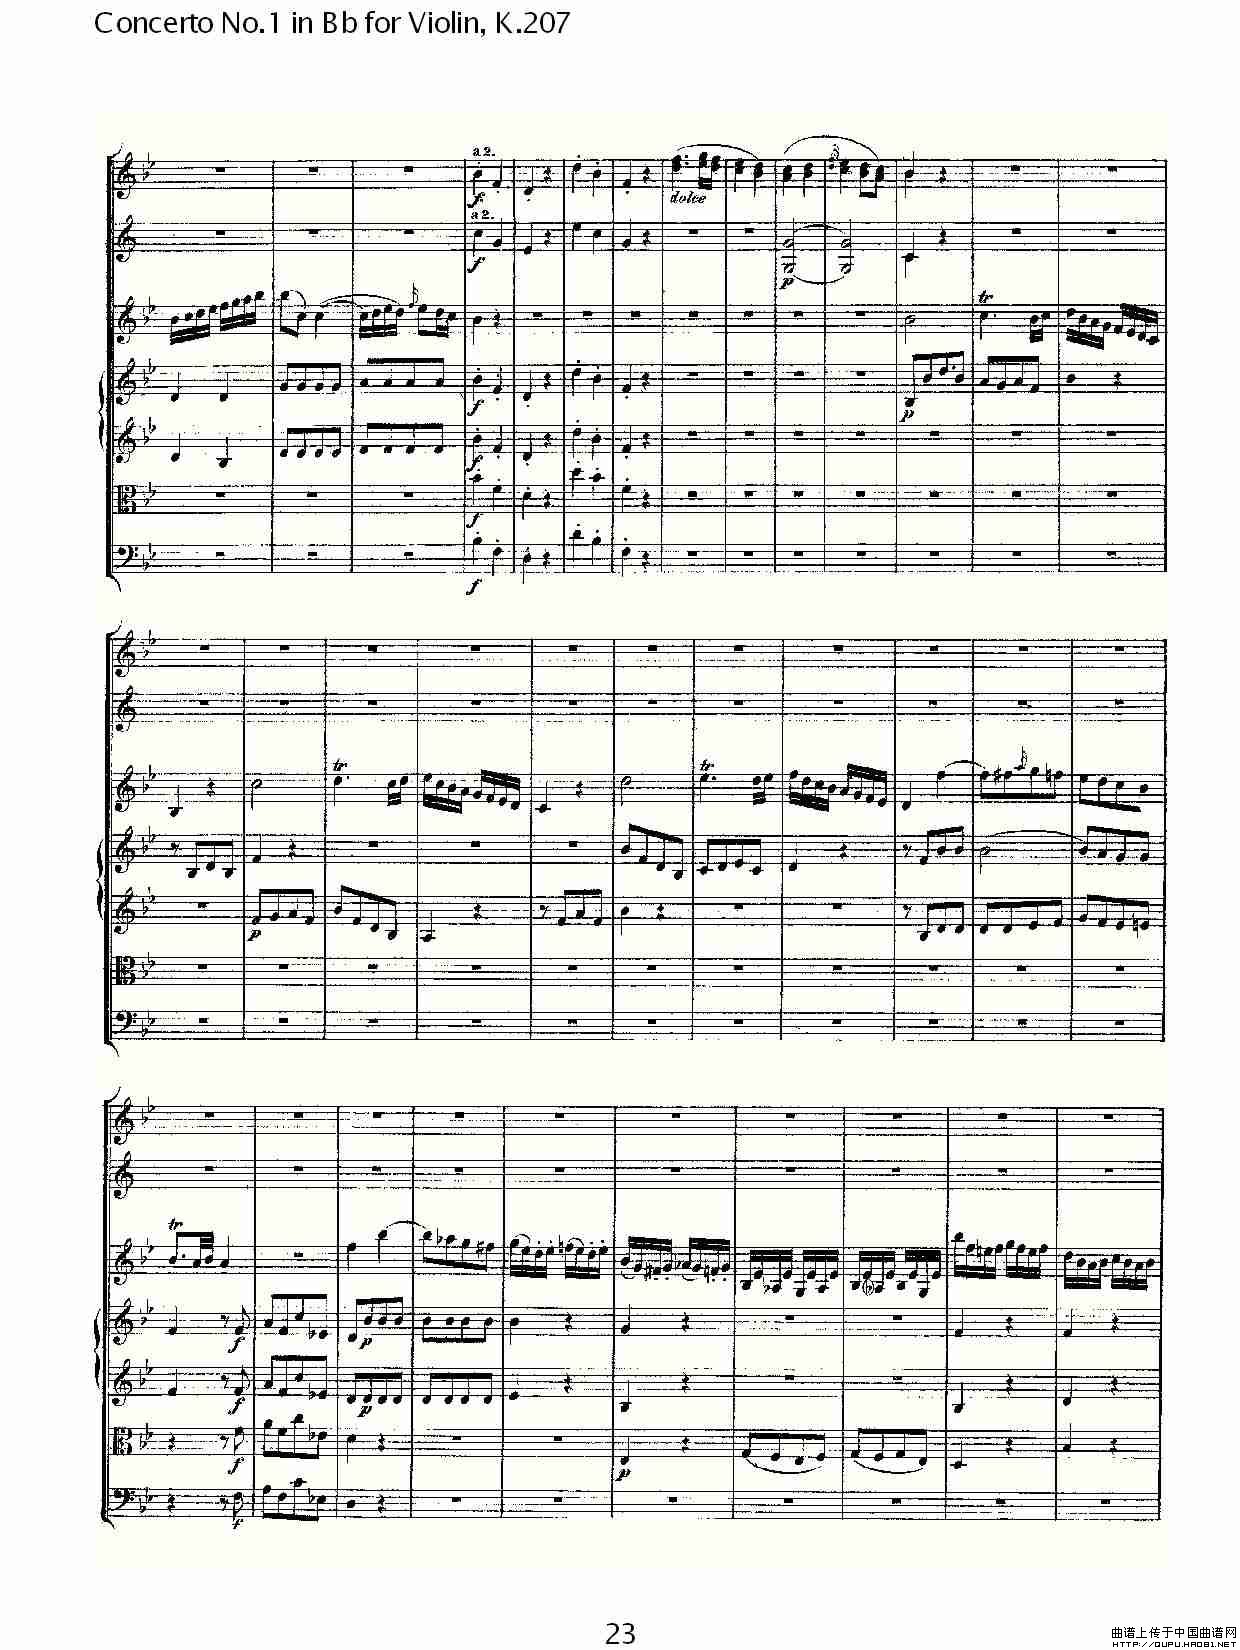 Concerto No.1 in Bb for Violin, K.207（Bb调小提琴第一协